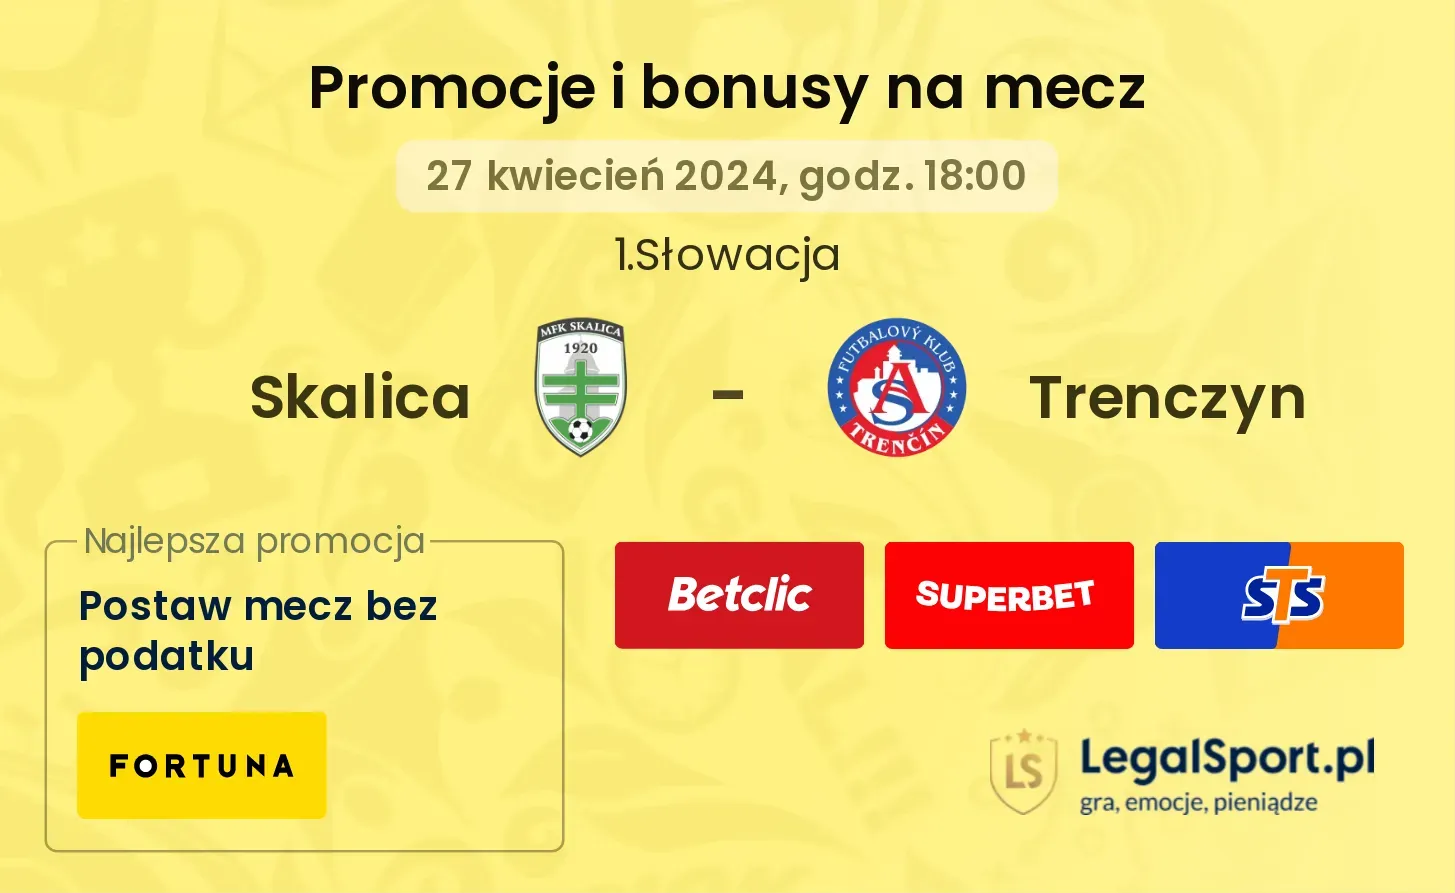 Skalica - Trenczyn promocje bonusy na mecz